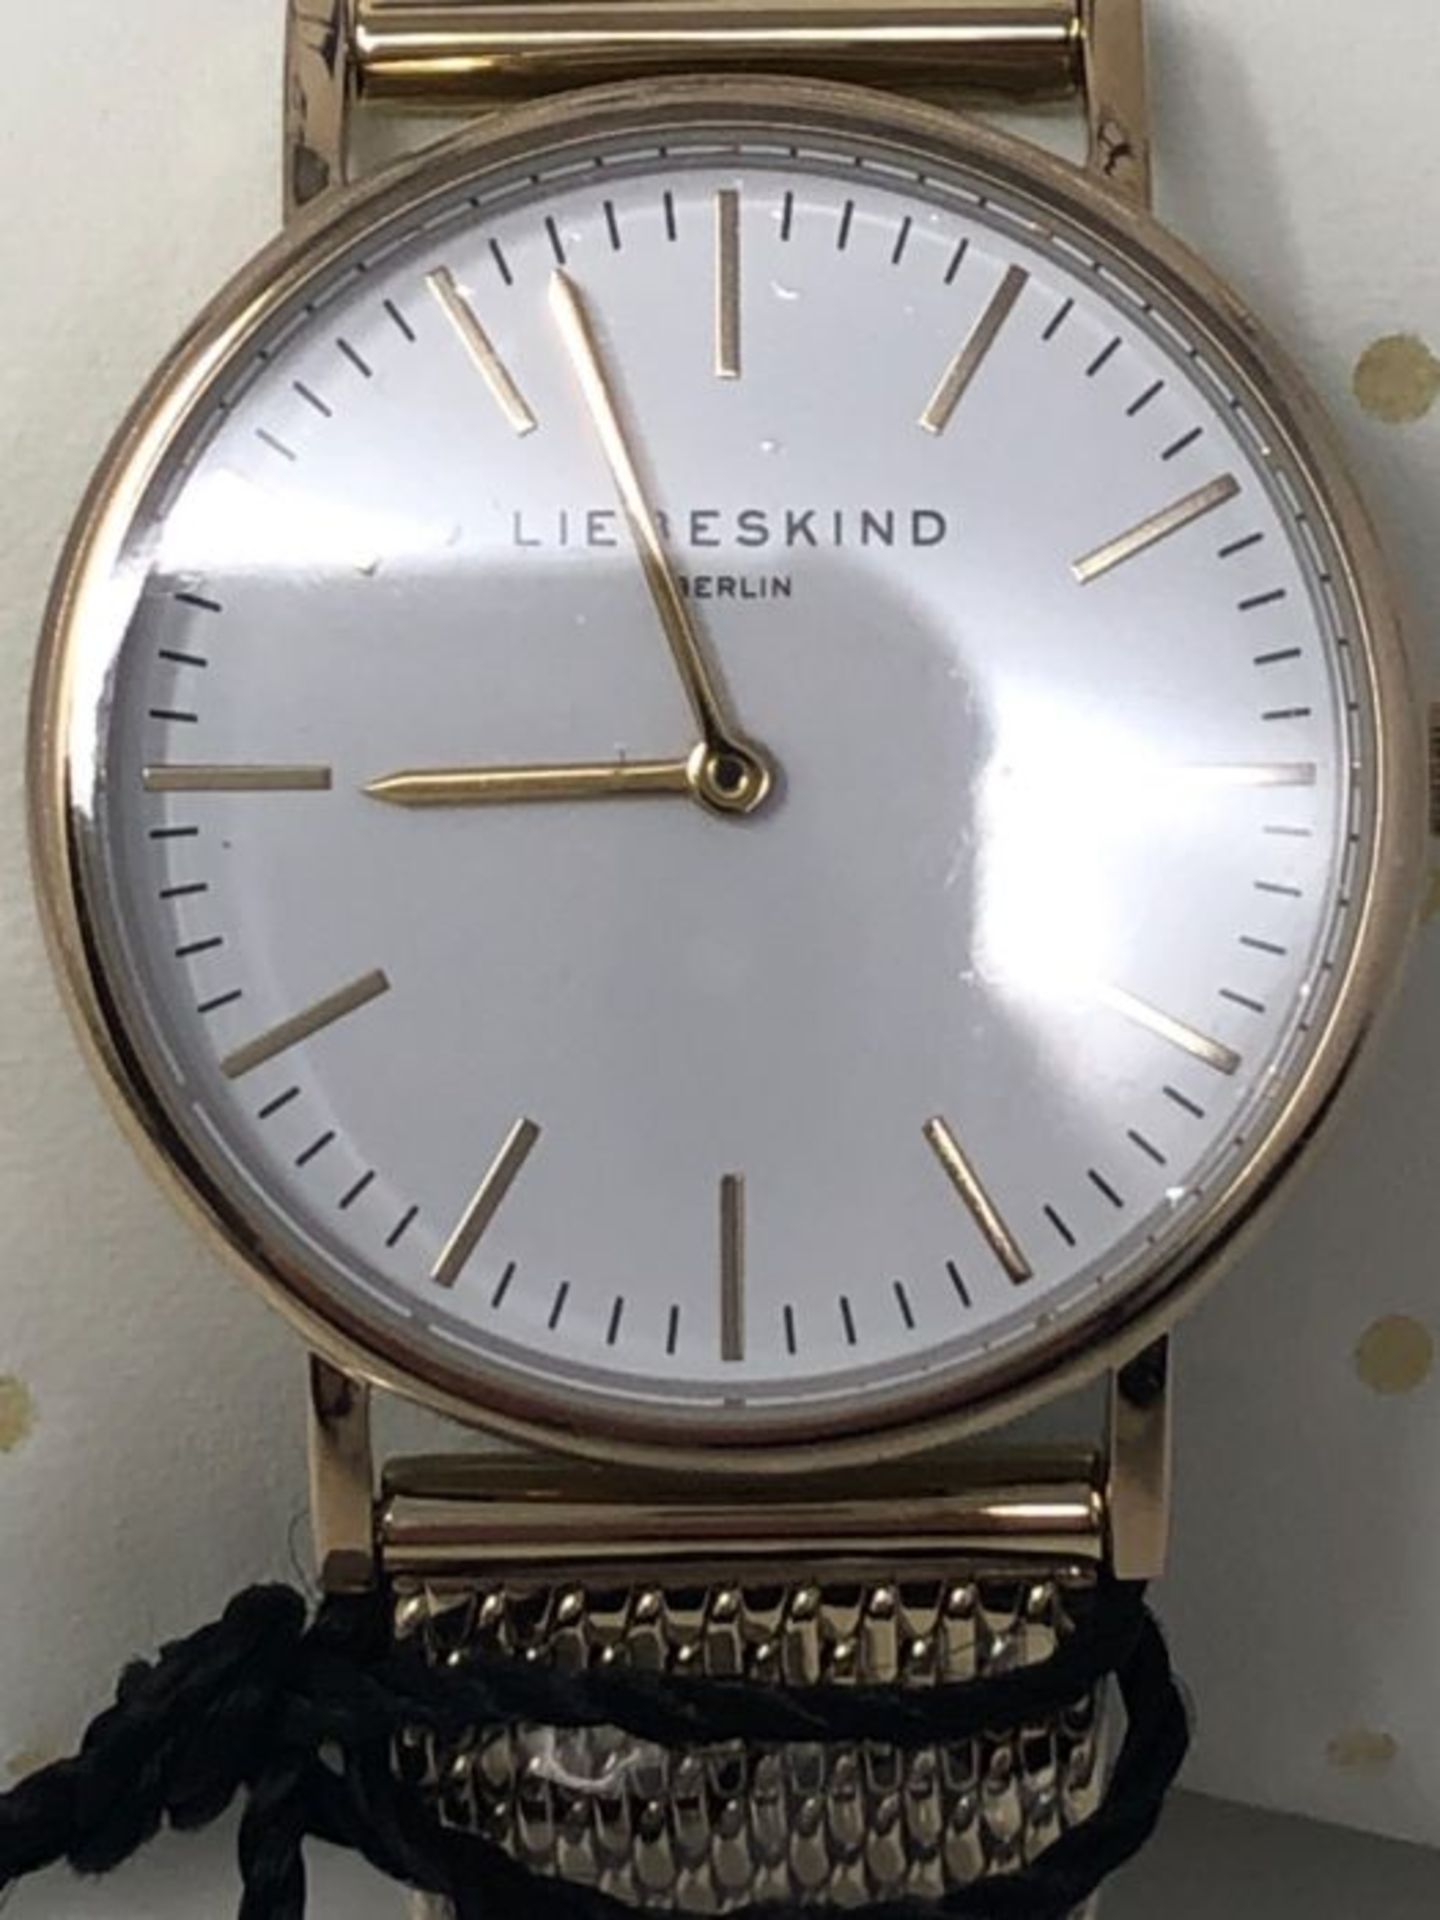 RRP £71.00 Liebeskind Berlin Damen Analog Quarz Uhr mit Edelstahl, IP gold-weiÃx - Image 3 of 6